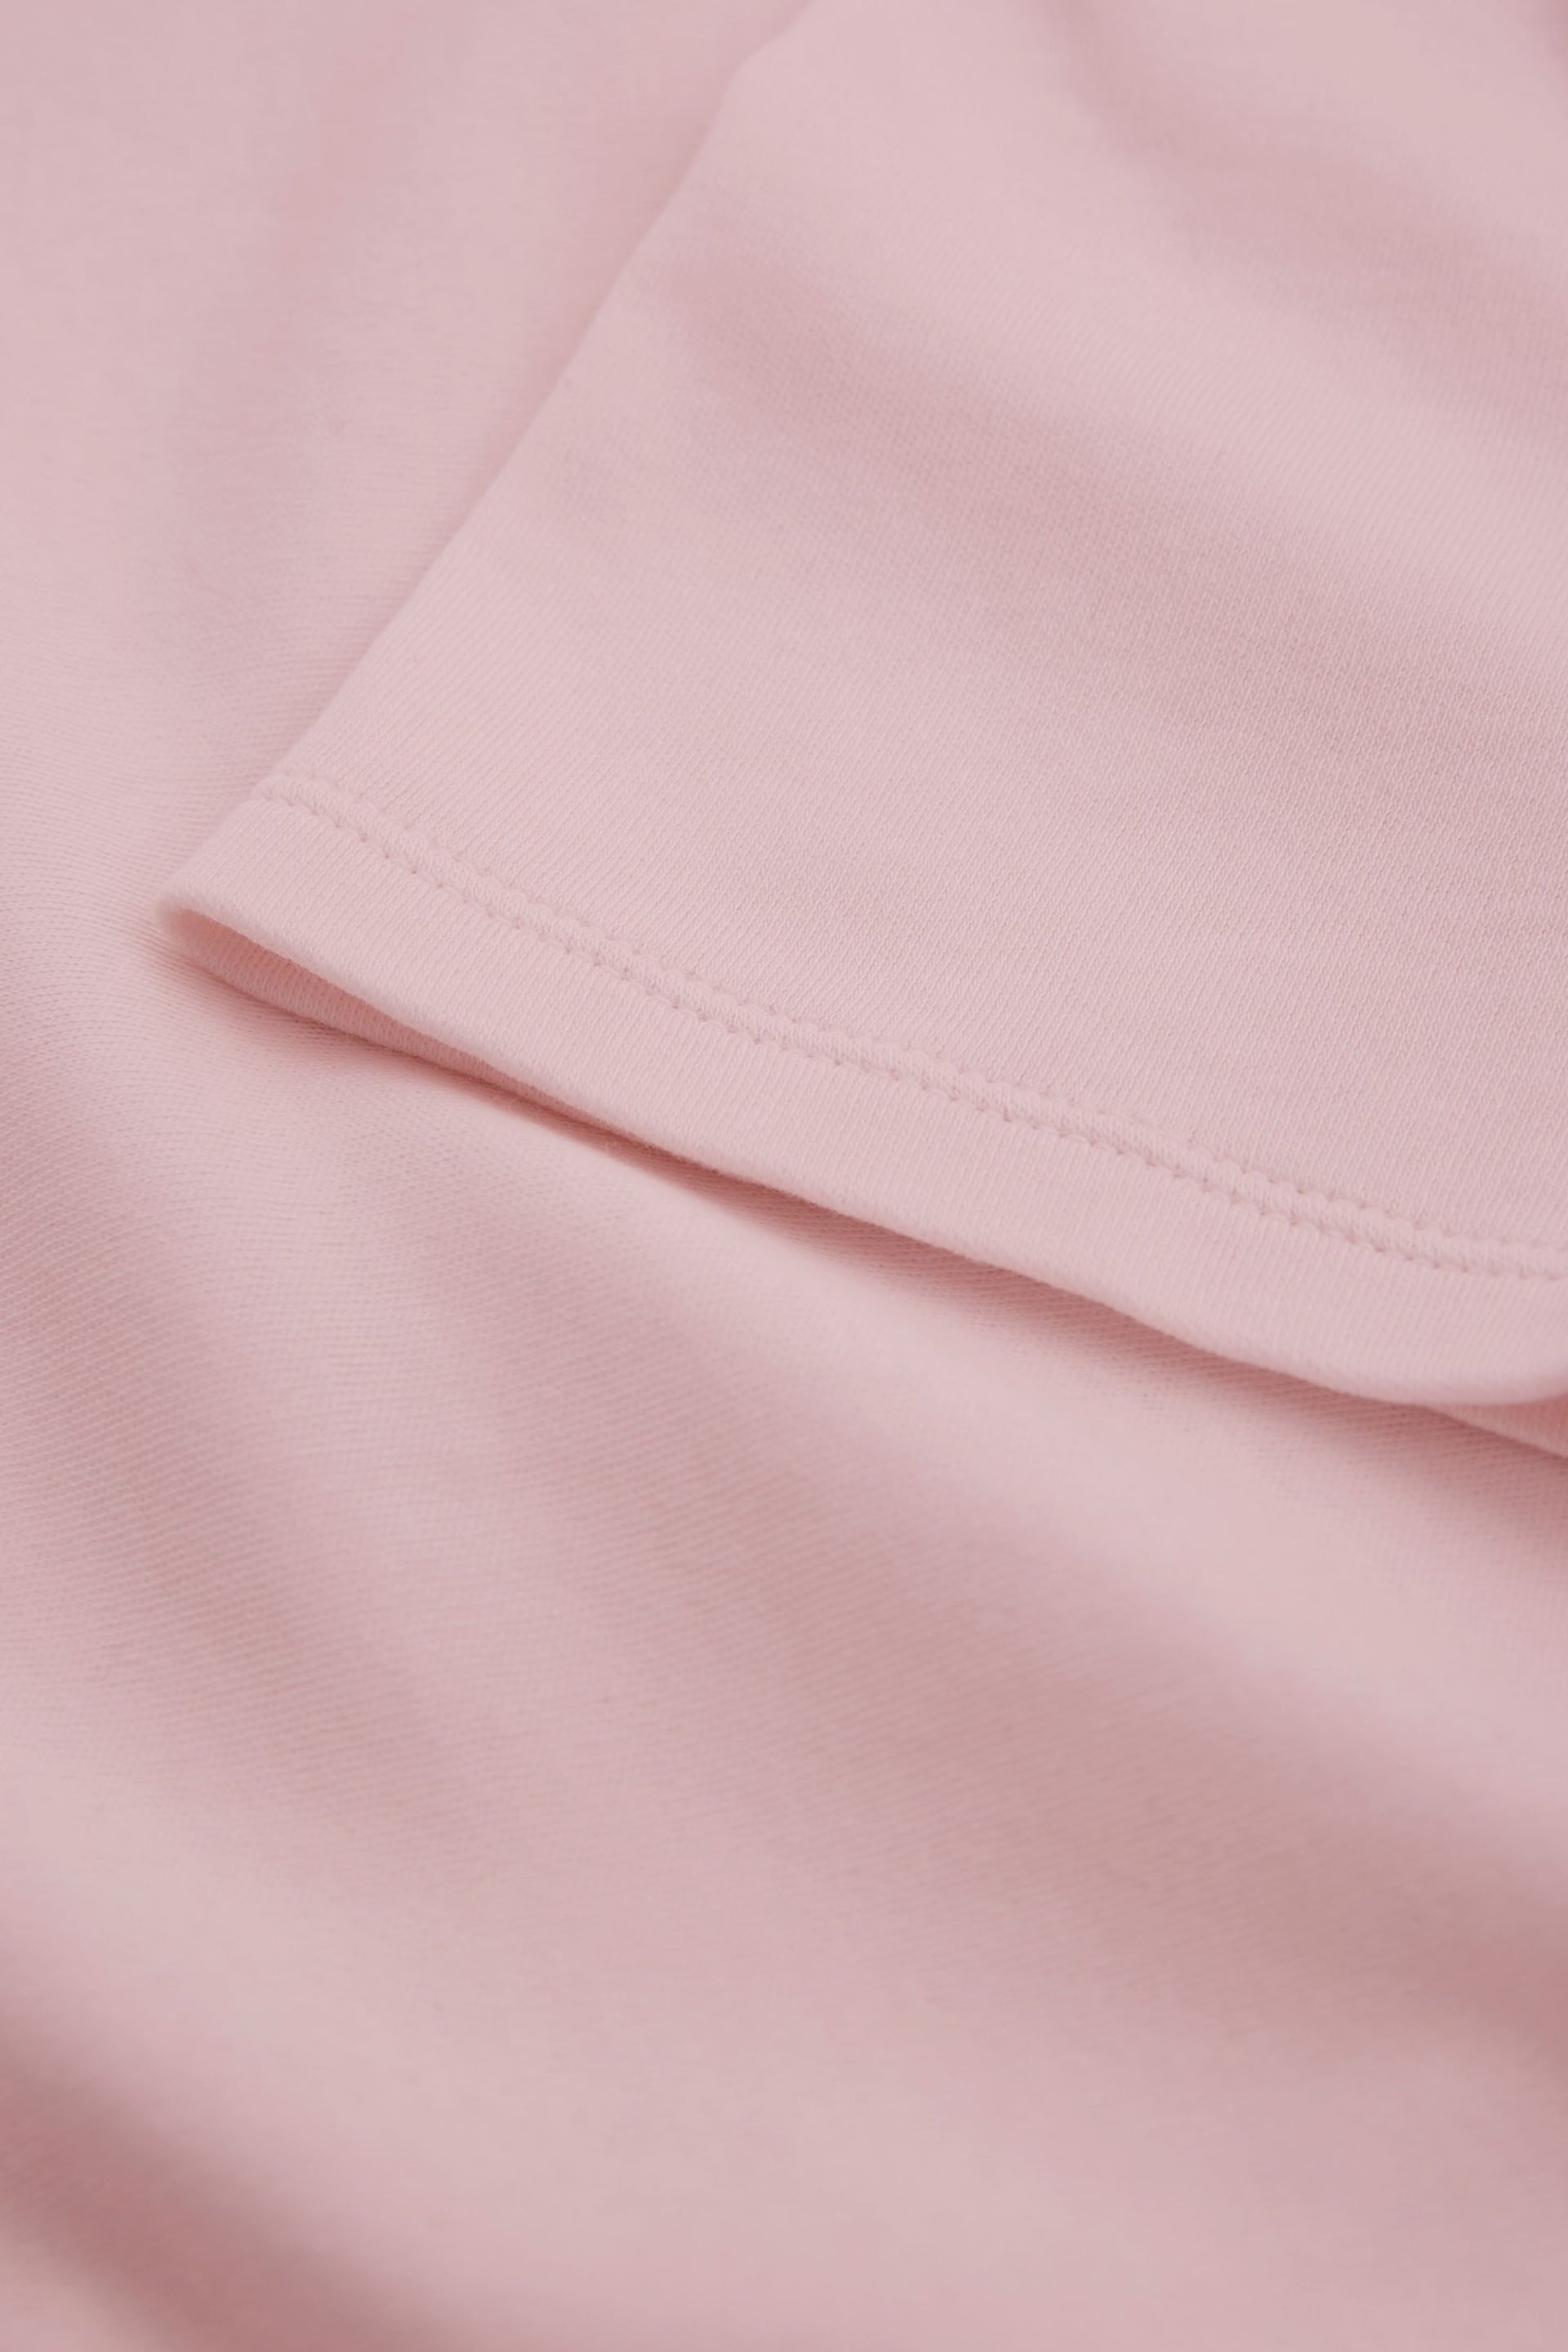 Celtic & Co Pink Slim Fit T-Shirt - Image 7 of 7